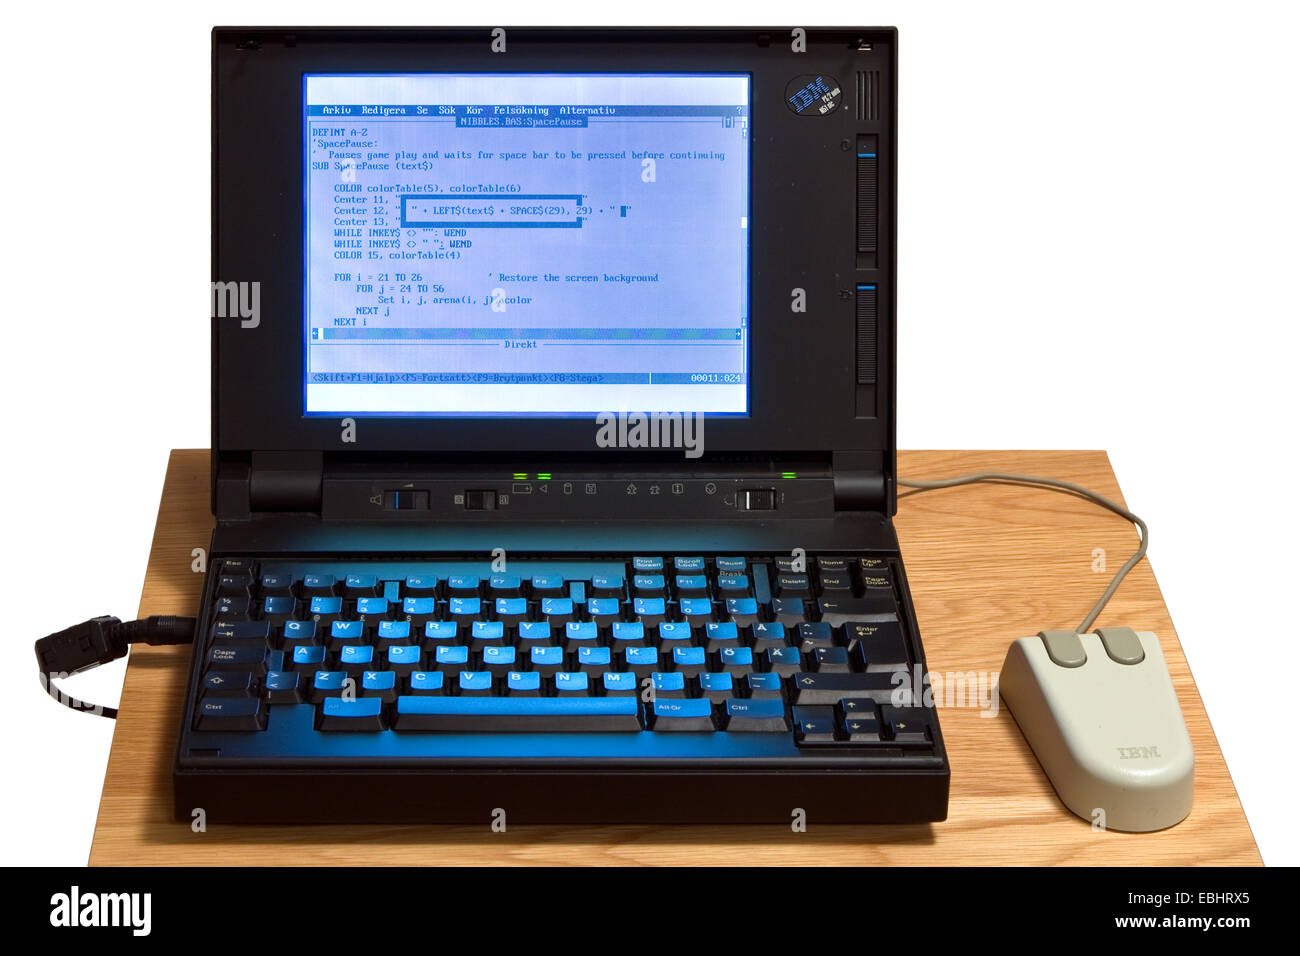 Un ordinateur portable IBM à partir du début des années 1990 montrant le langage de programmation BASIC. Banque D'Images